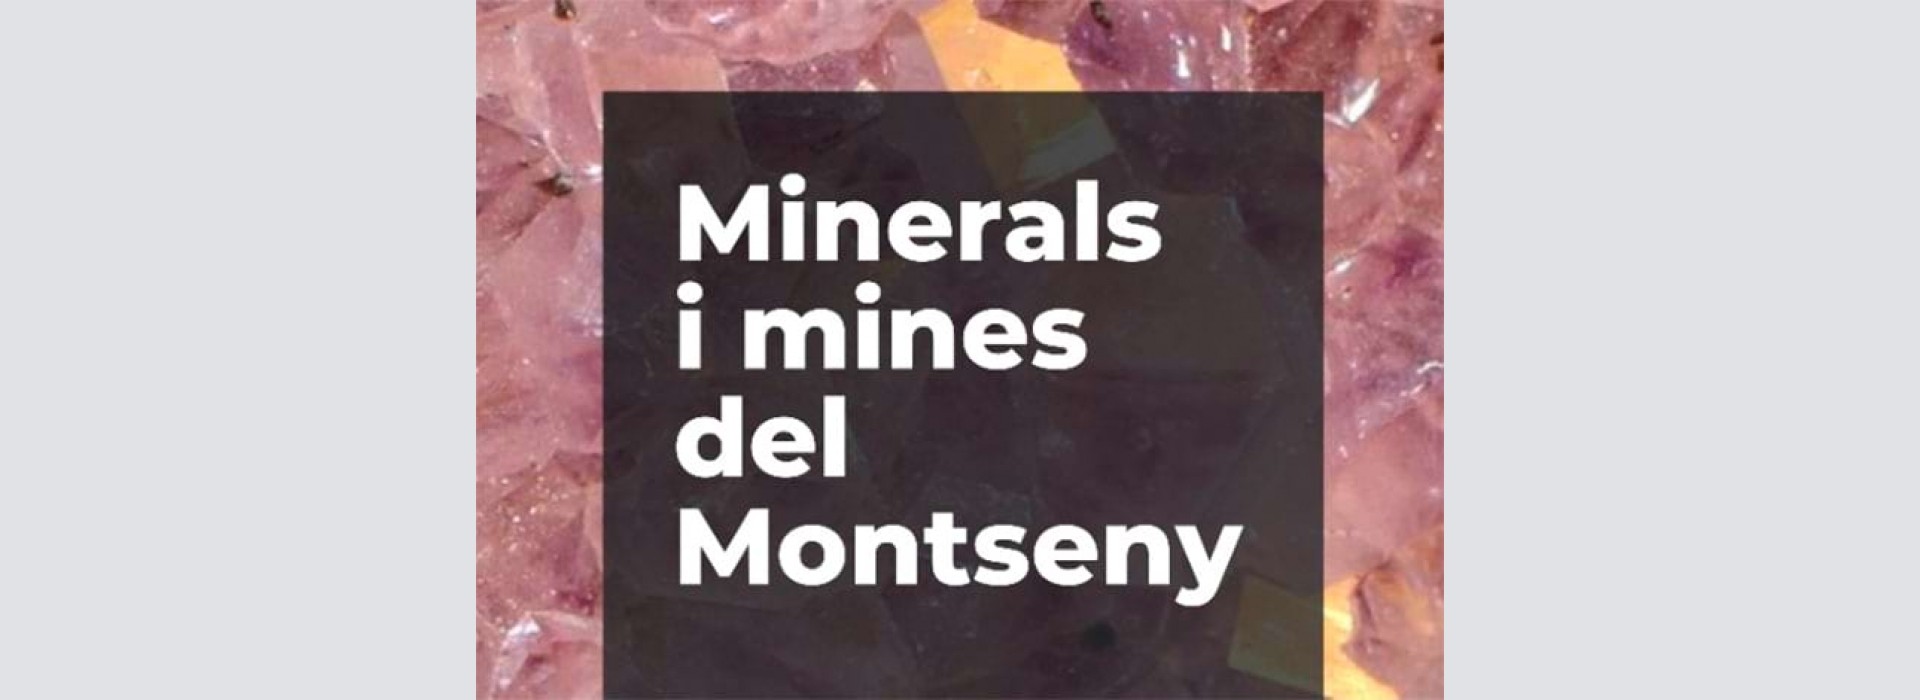 Minerals i mines del Montseny, a Viladrau